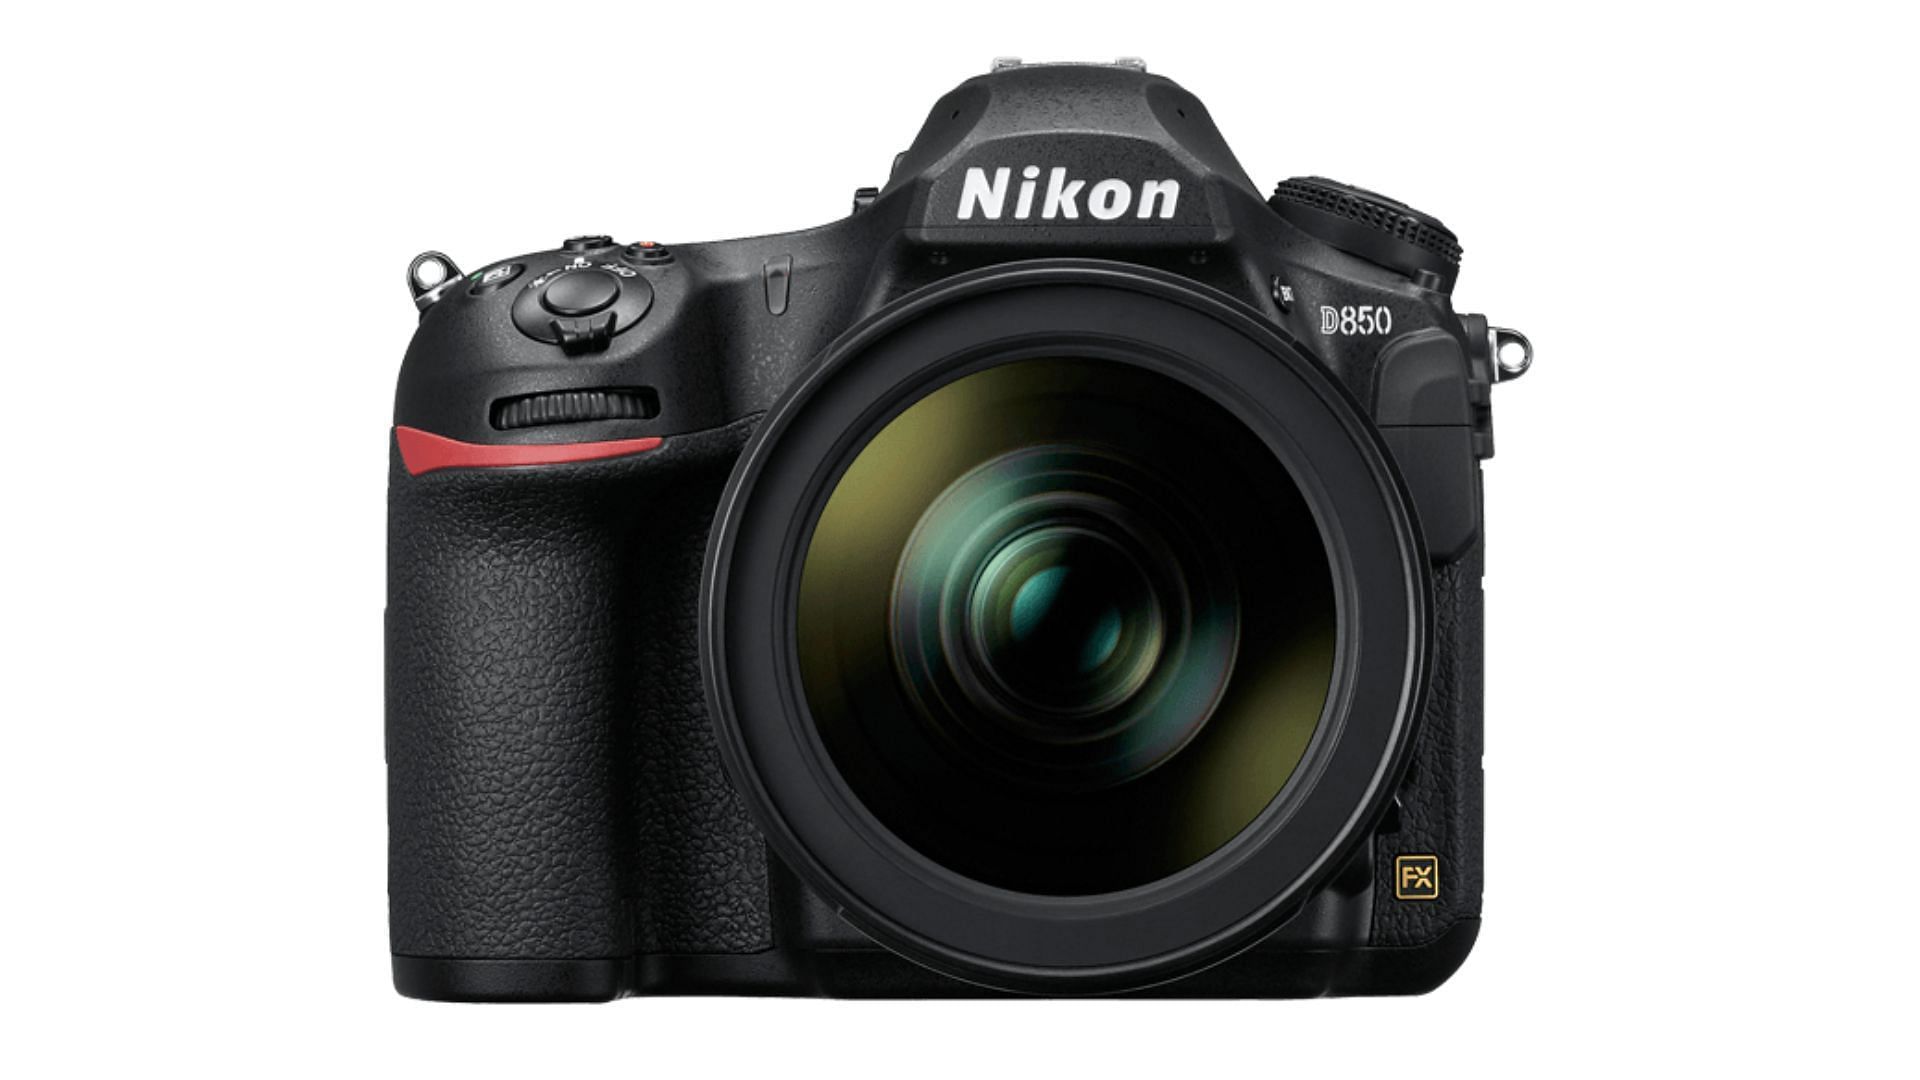 Nikon D850 (Image via Nikon USA)